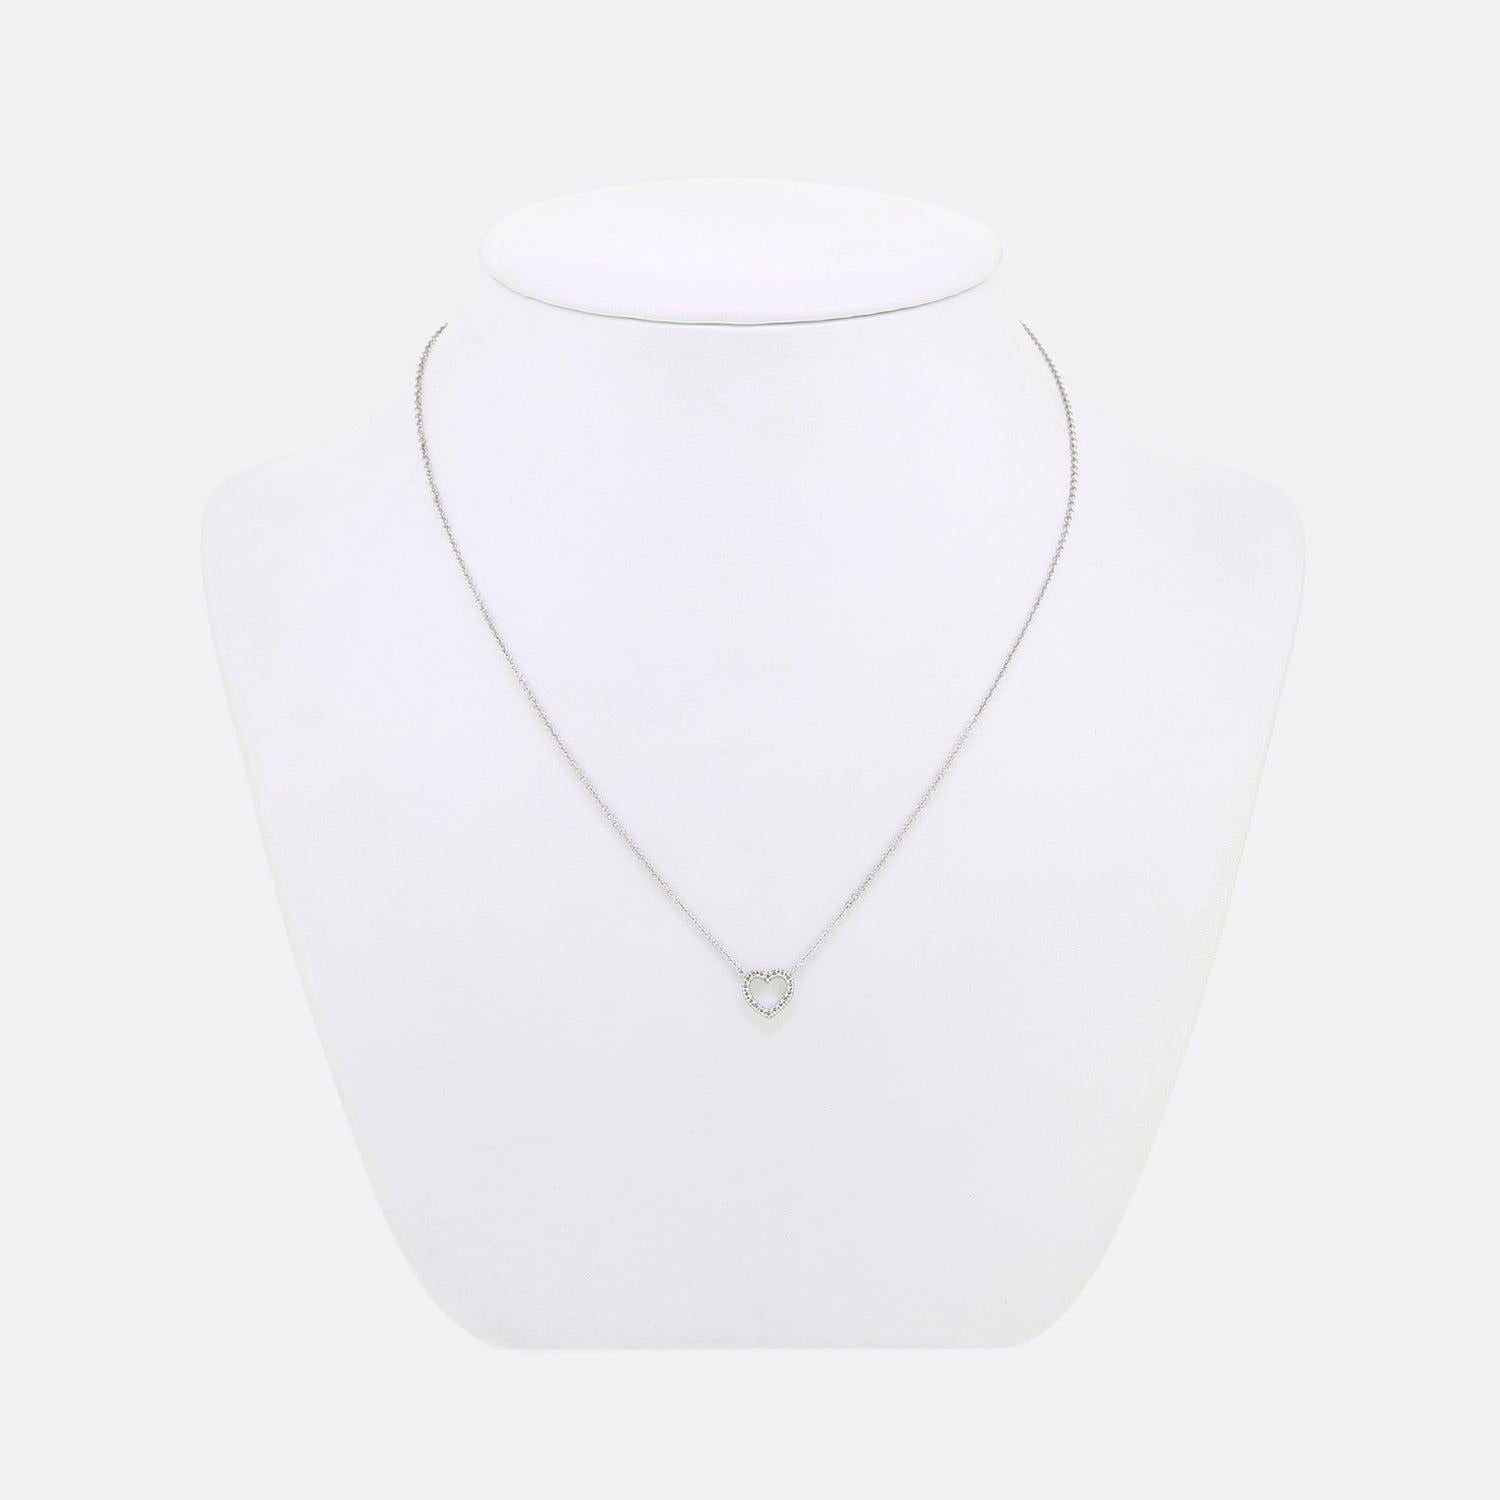 Nous avons ici un collier en or blanc 18 ct de l'emblématique créateur et détaillant de bijoux, Tiffany & Co. Le collier fait partie de la collection métro et accueille un petit cœur serti de diamants.

Condit : Utilisé (Excellent)
Poids : 1,7